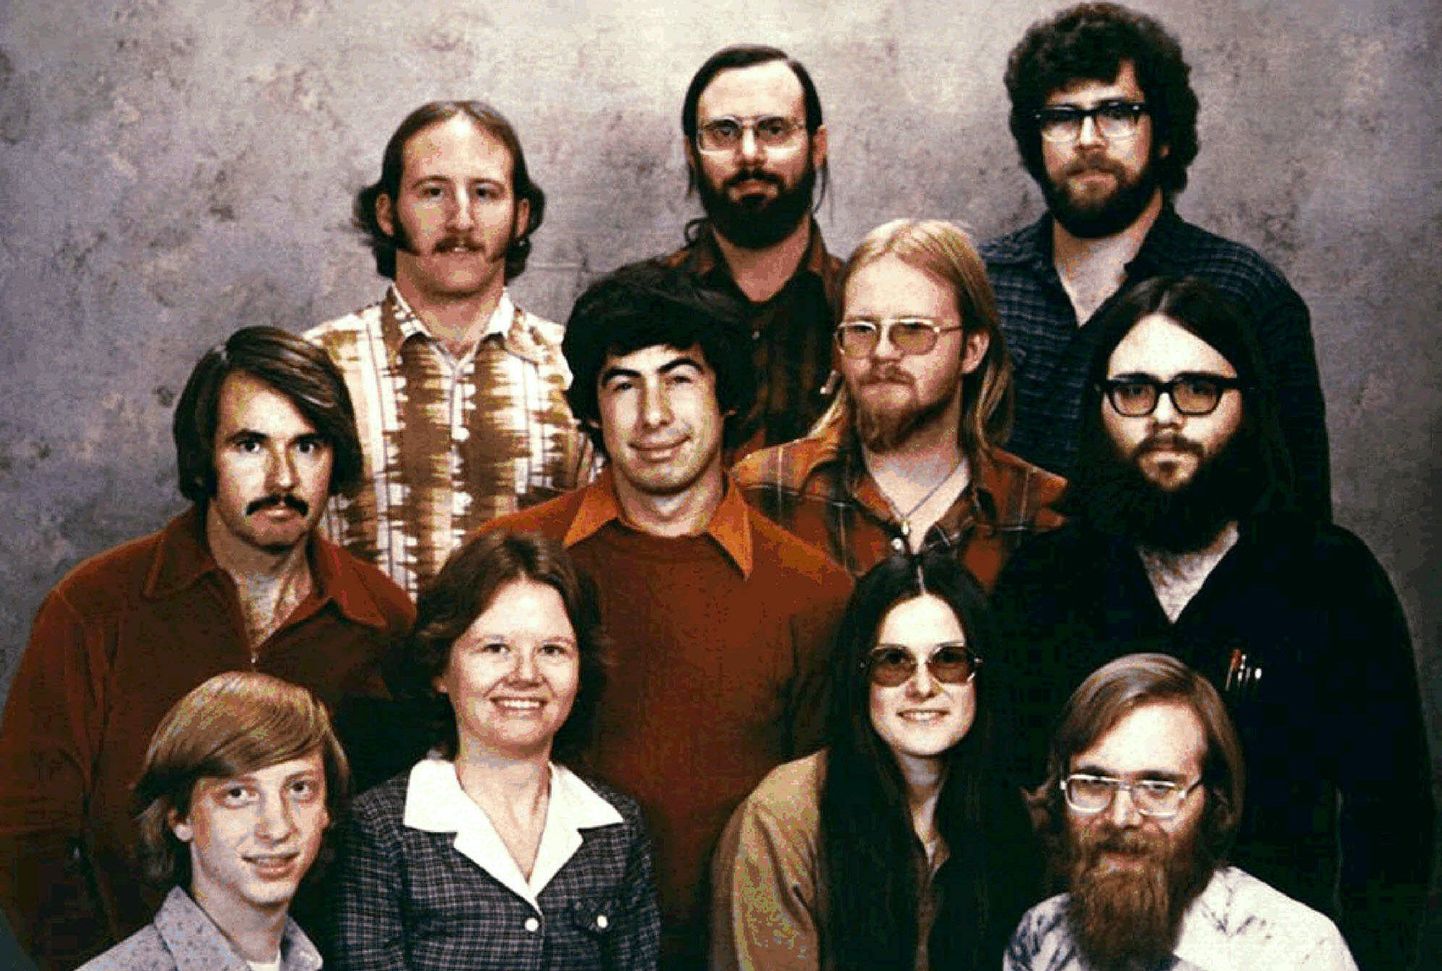 Основатели Microsoft. В нижнем ряду крайний слева - Билл Гейтс, крайний справа - Пол Аллен.